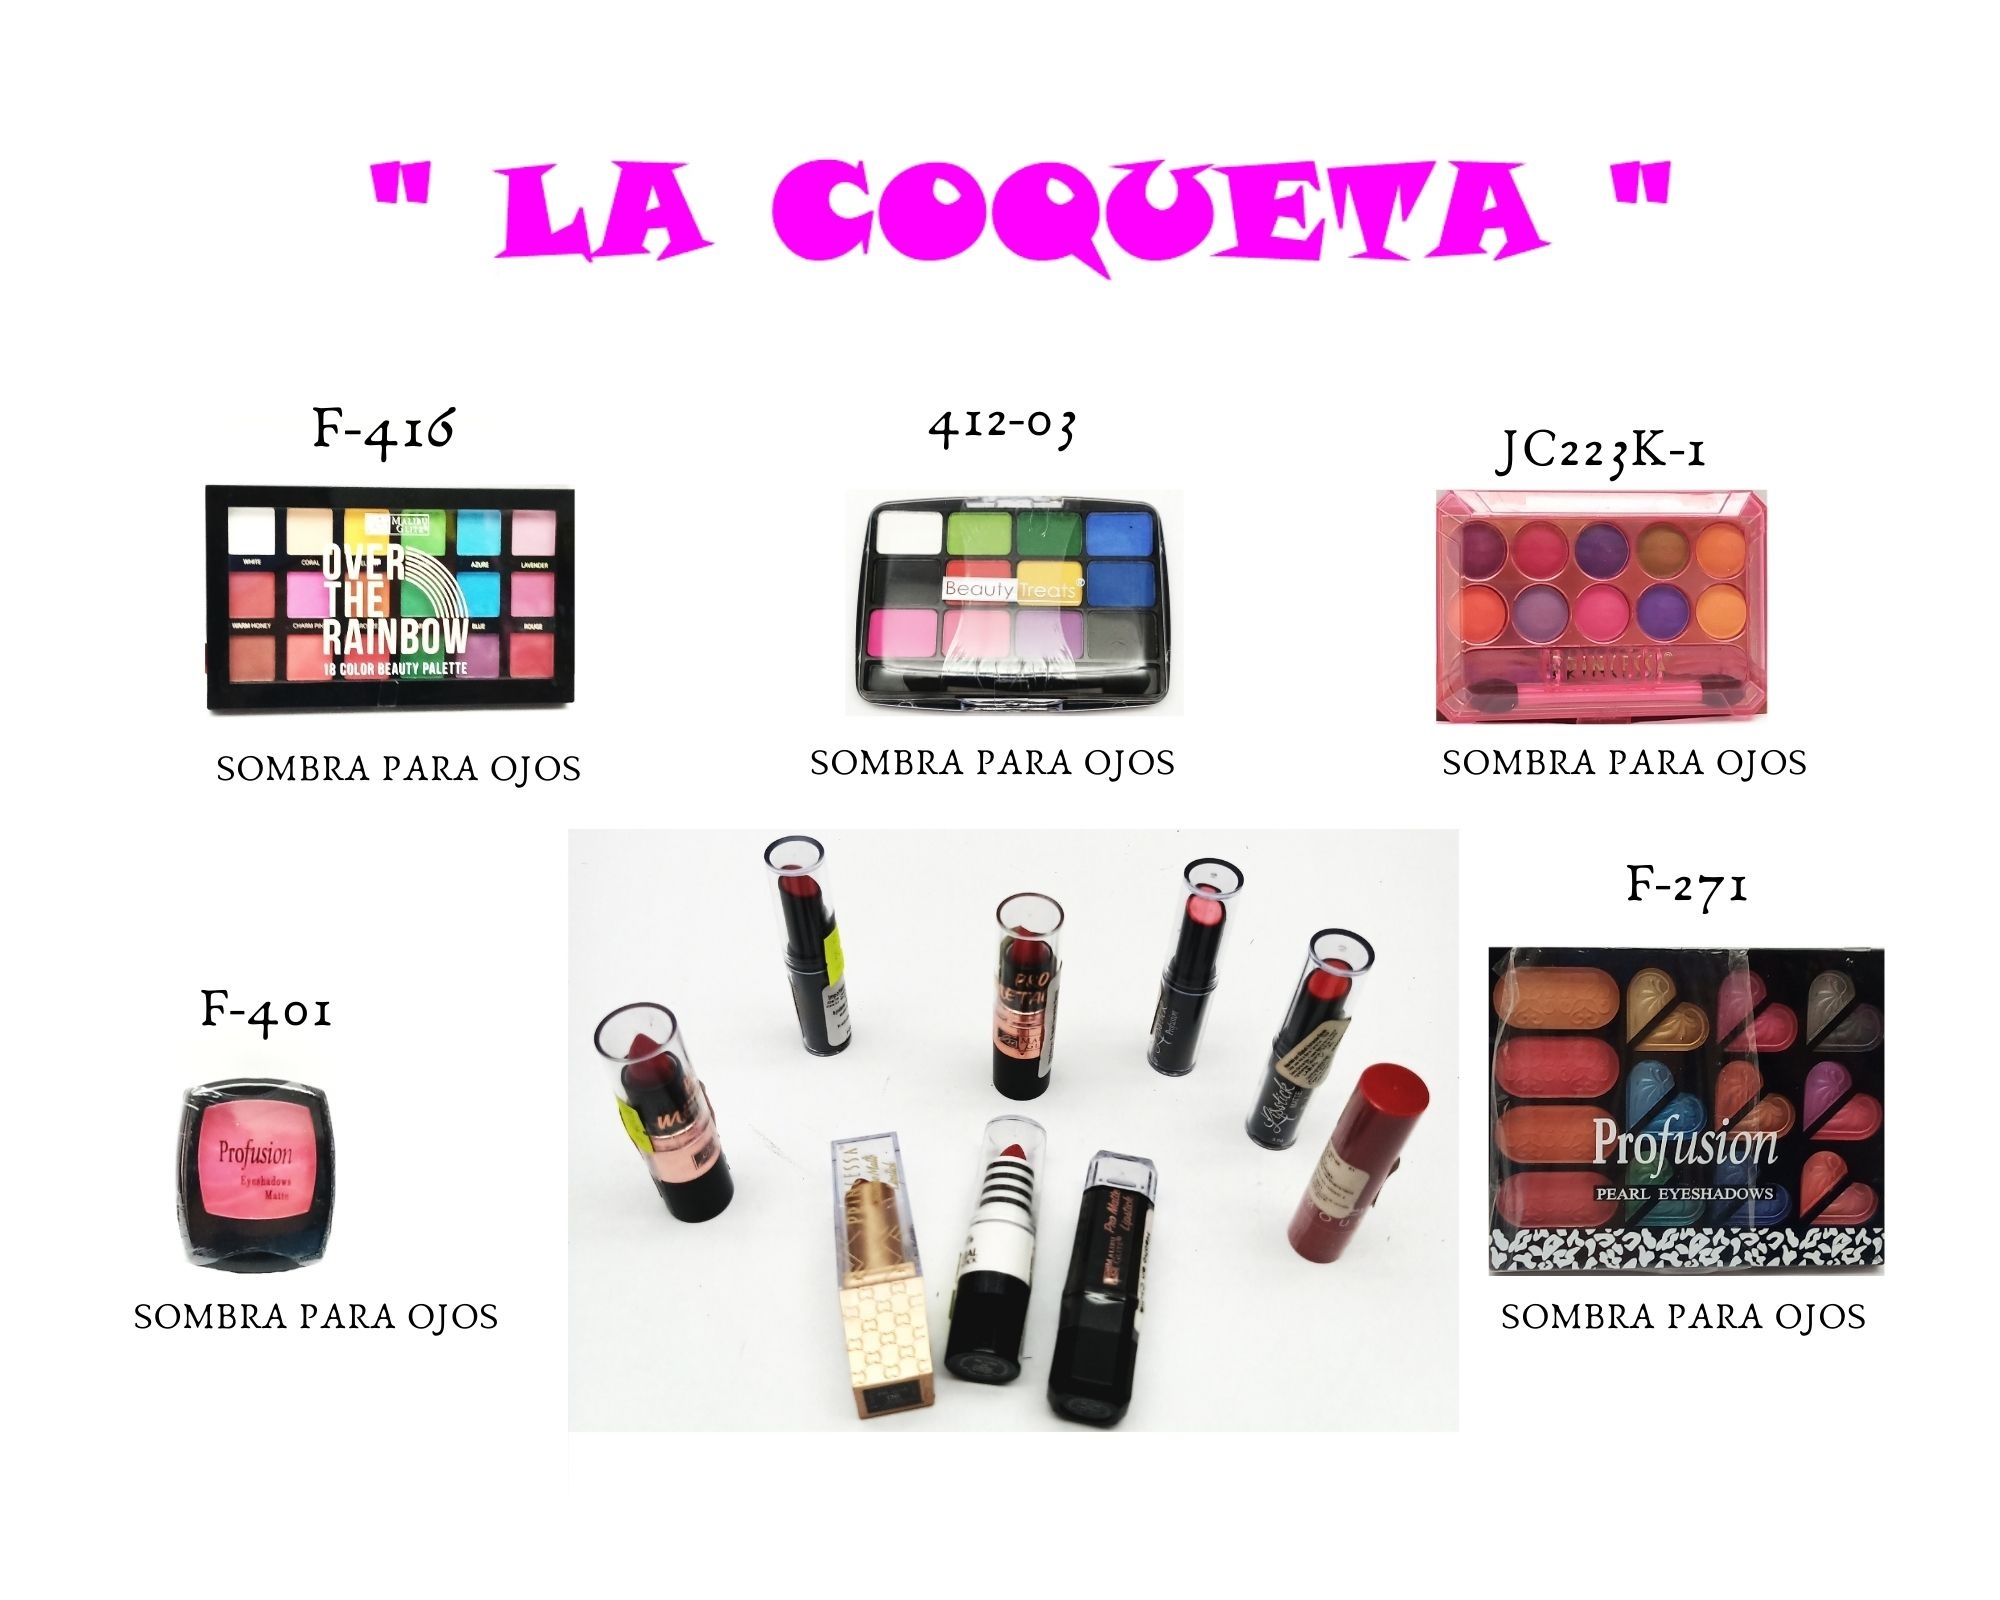 Cosmeticentro La Coqueta S.A. de C.V.